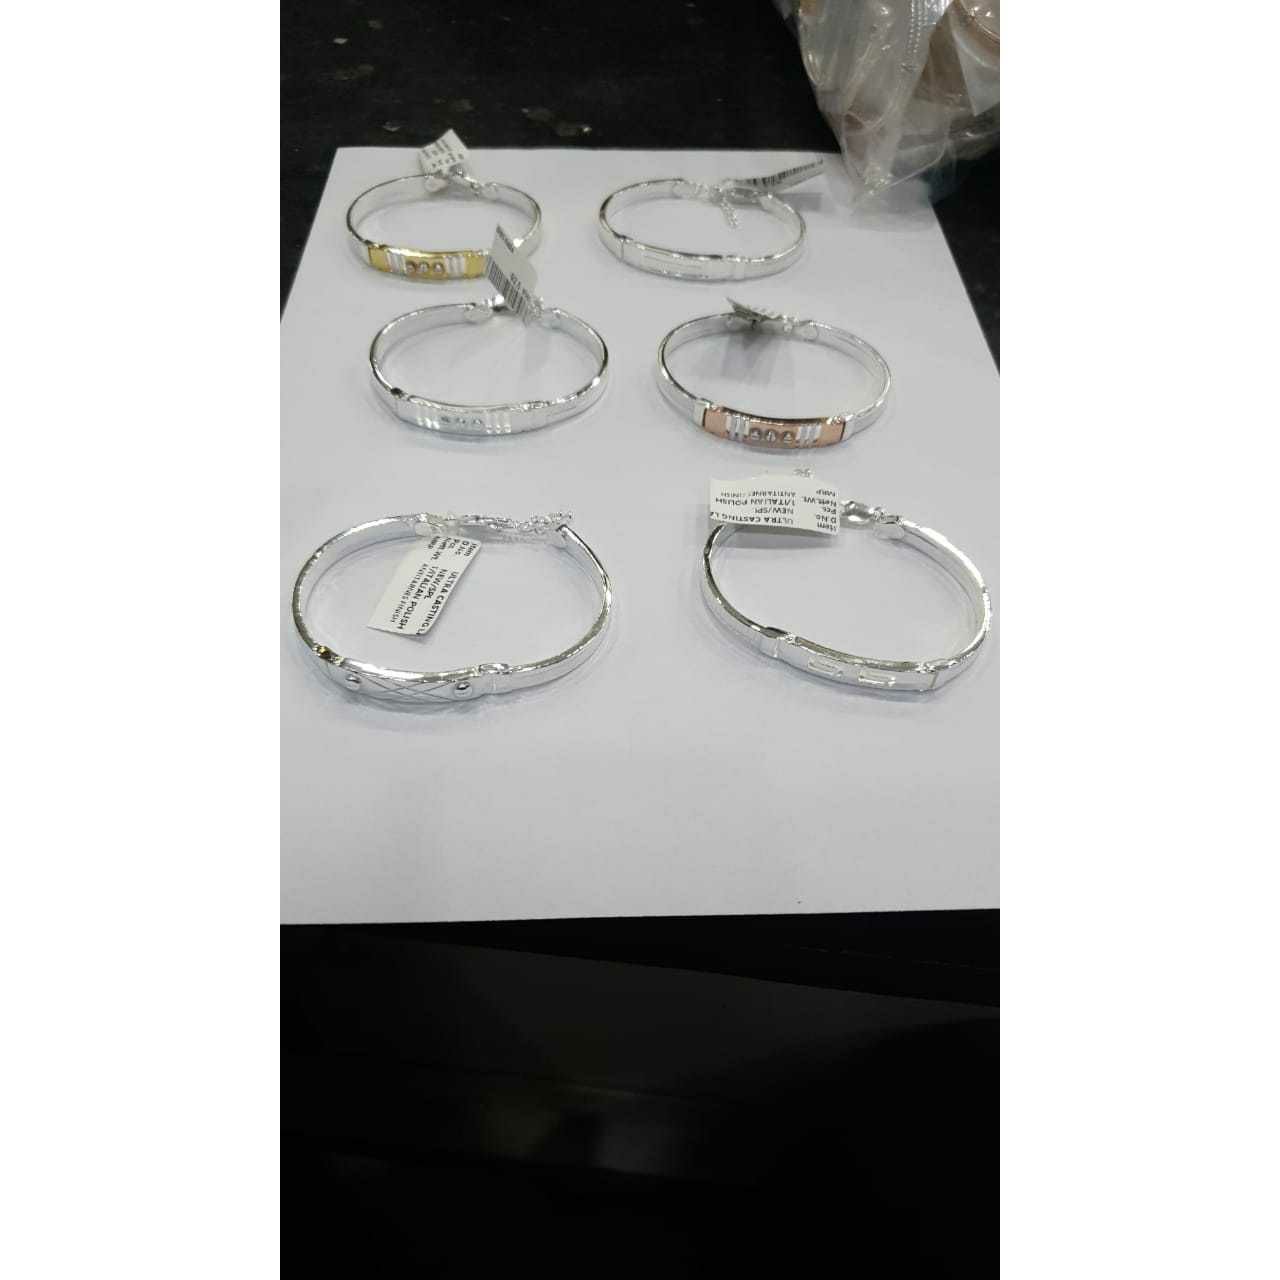 Om bracelet for girls with 18k gold plated sterling silver on adjustable  nylon cord bracelet| Jewelslane